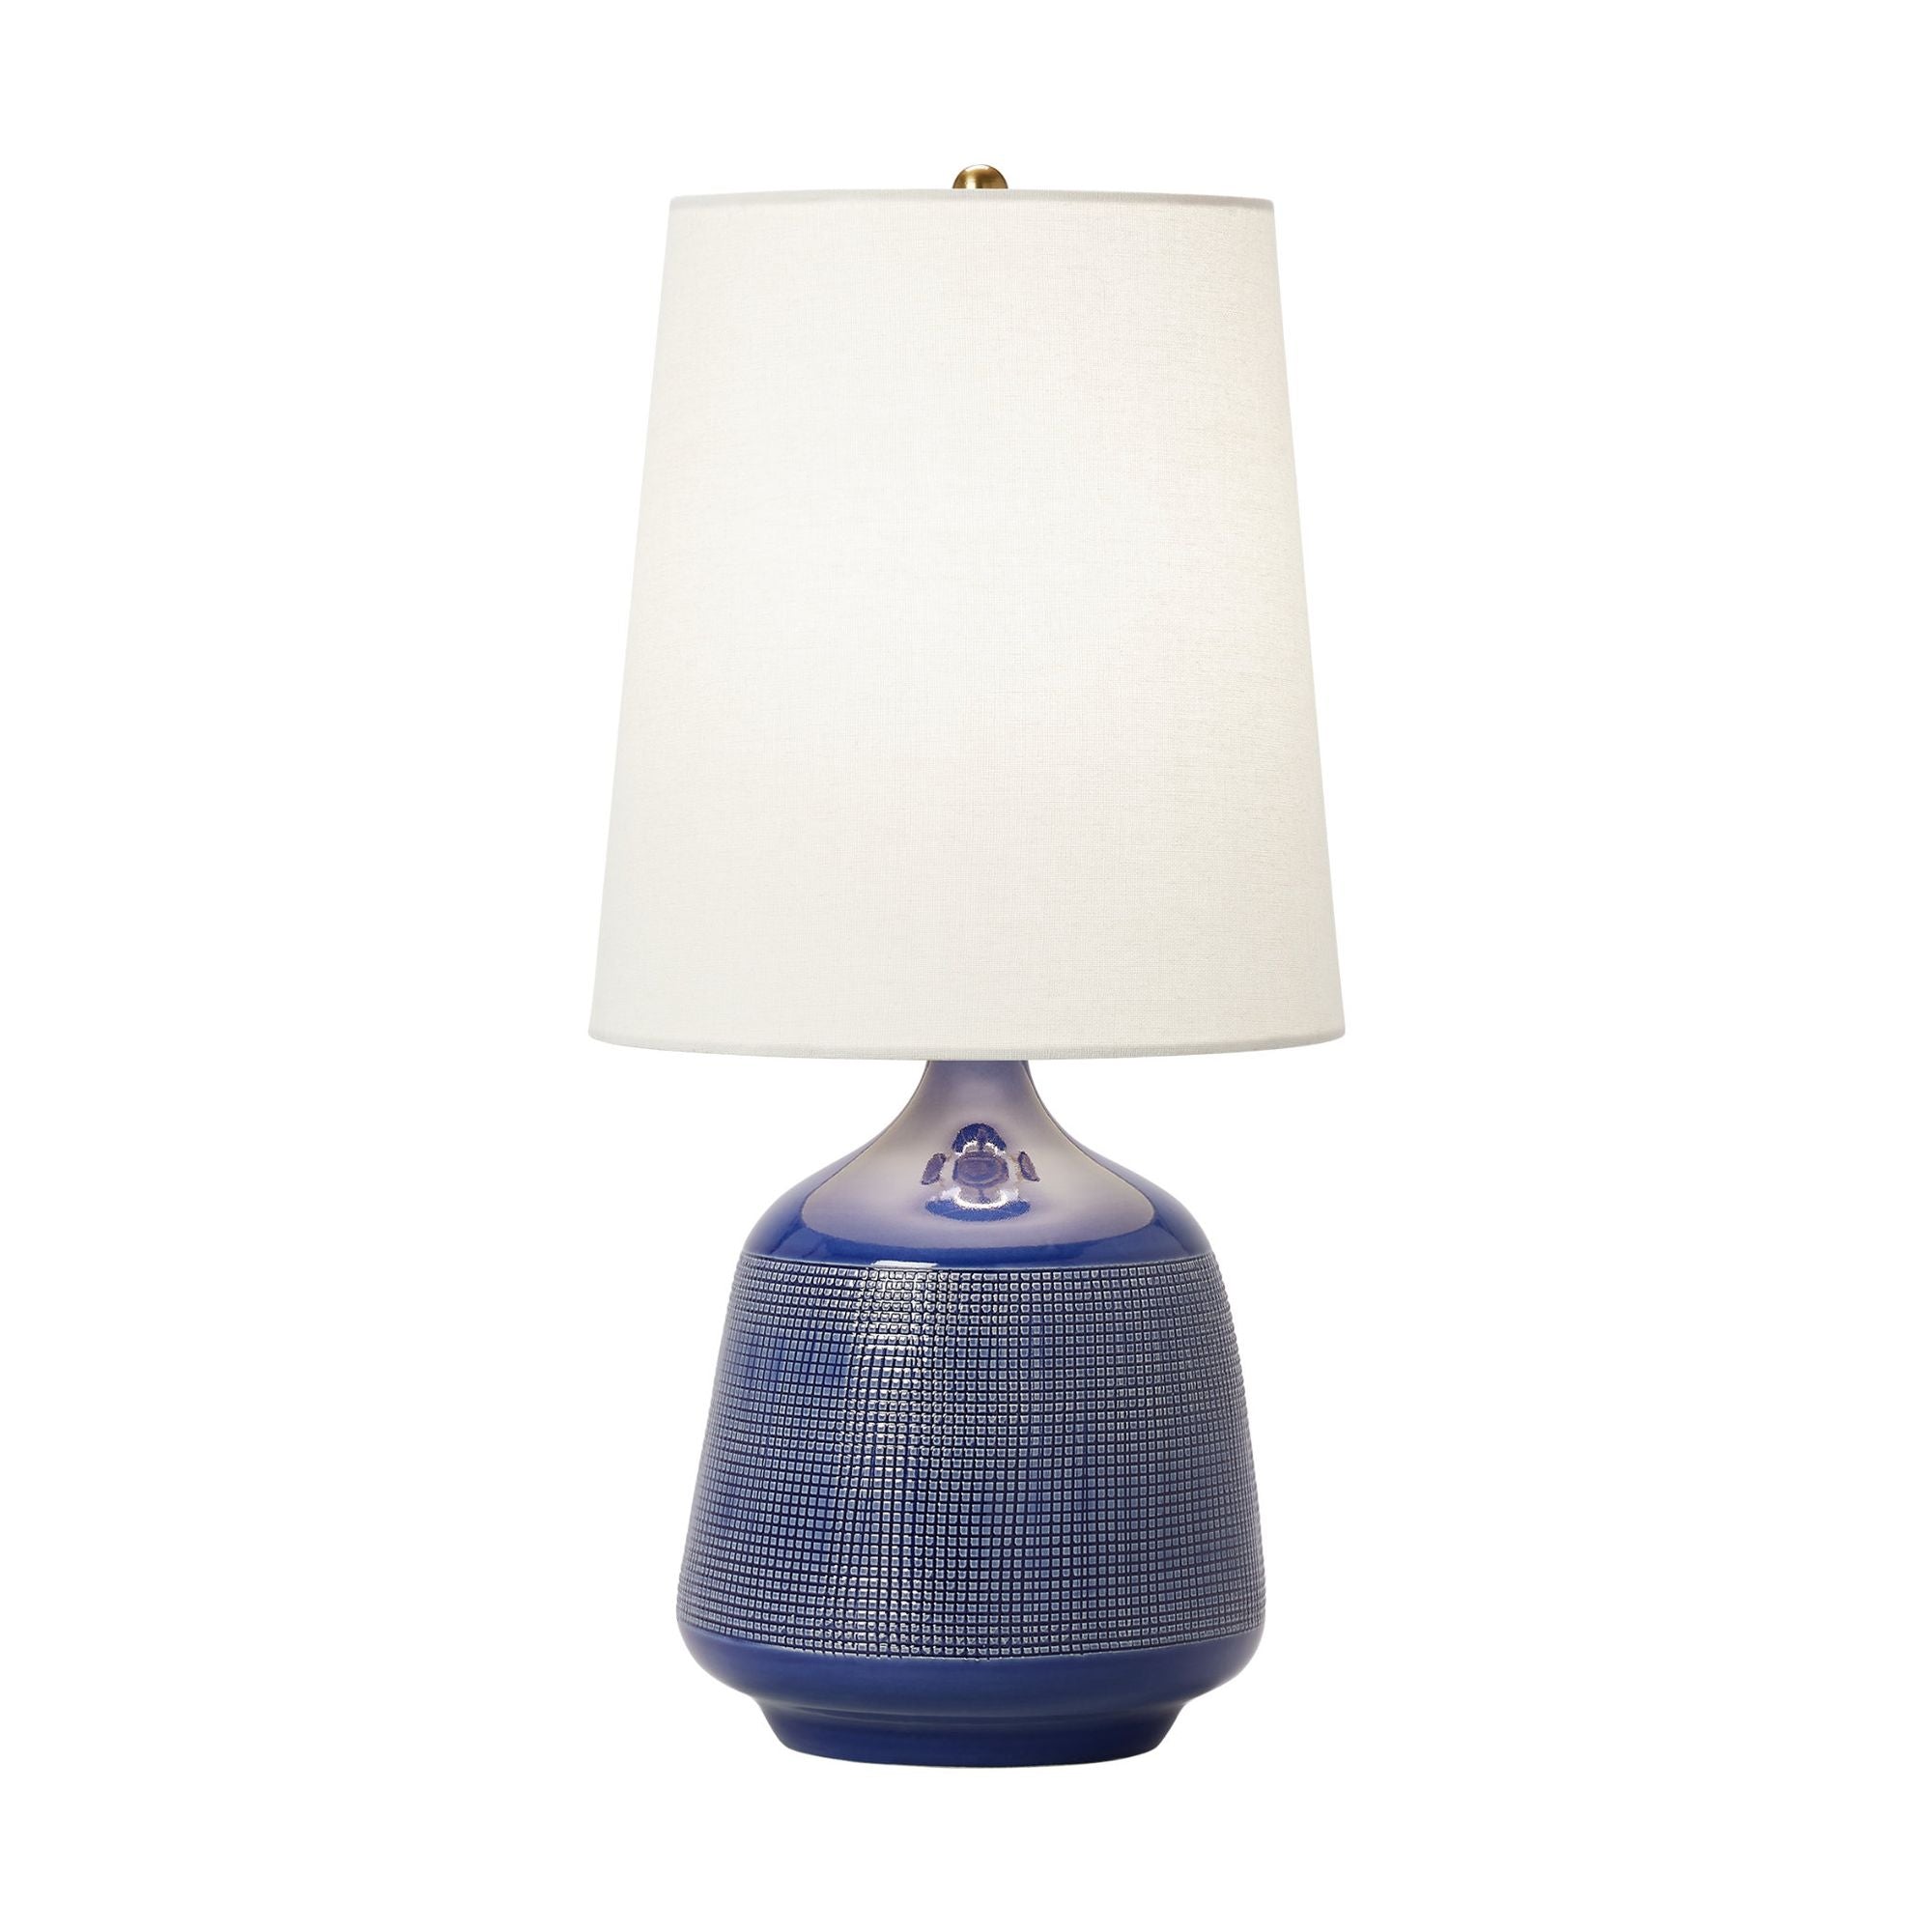 AERIN Ornella Small Table Lamp in Blue Celadon